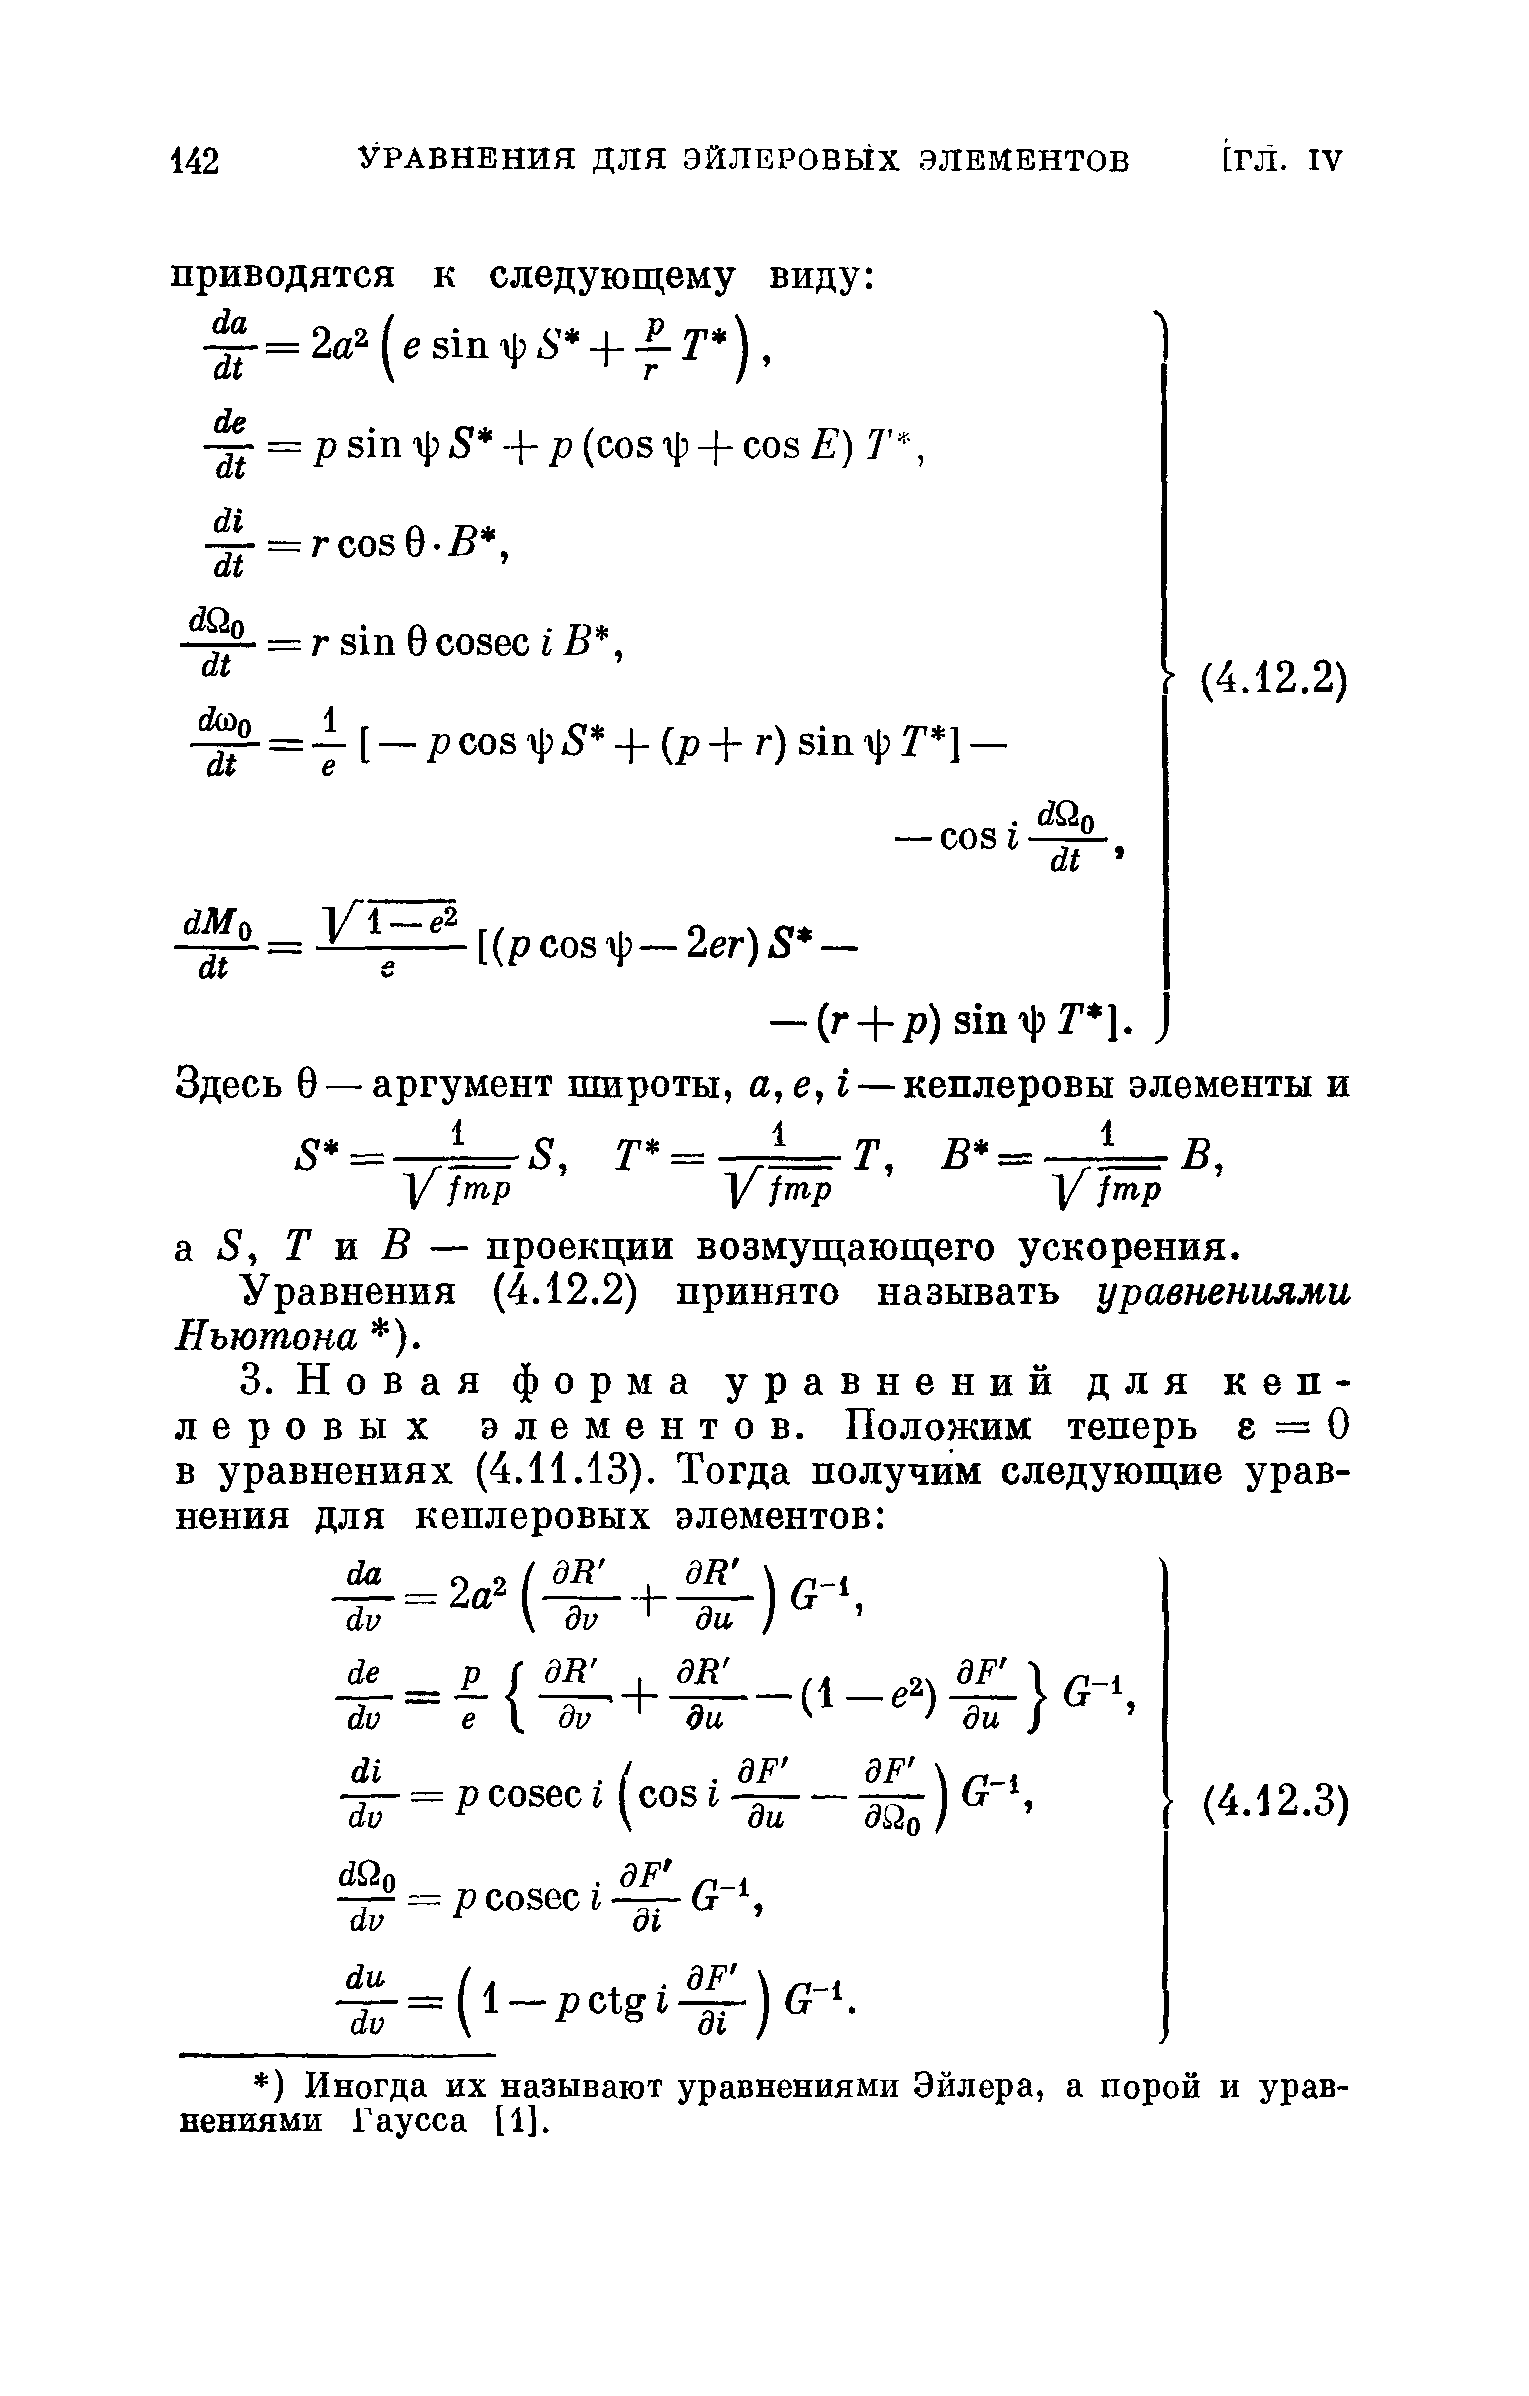 Уравнения (4.12.2) принято называть уравнениями Ньютона ).
